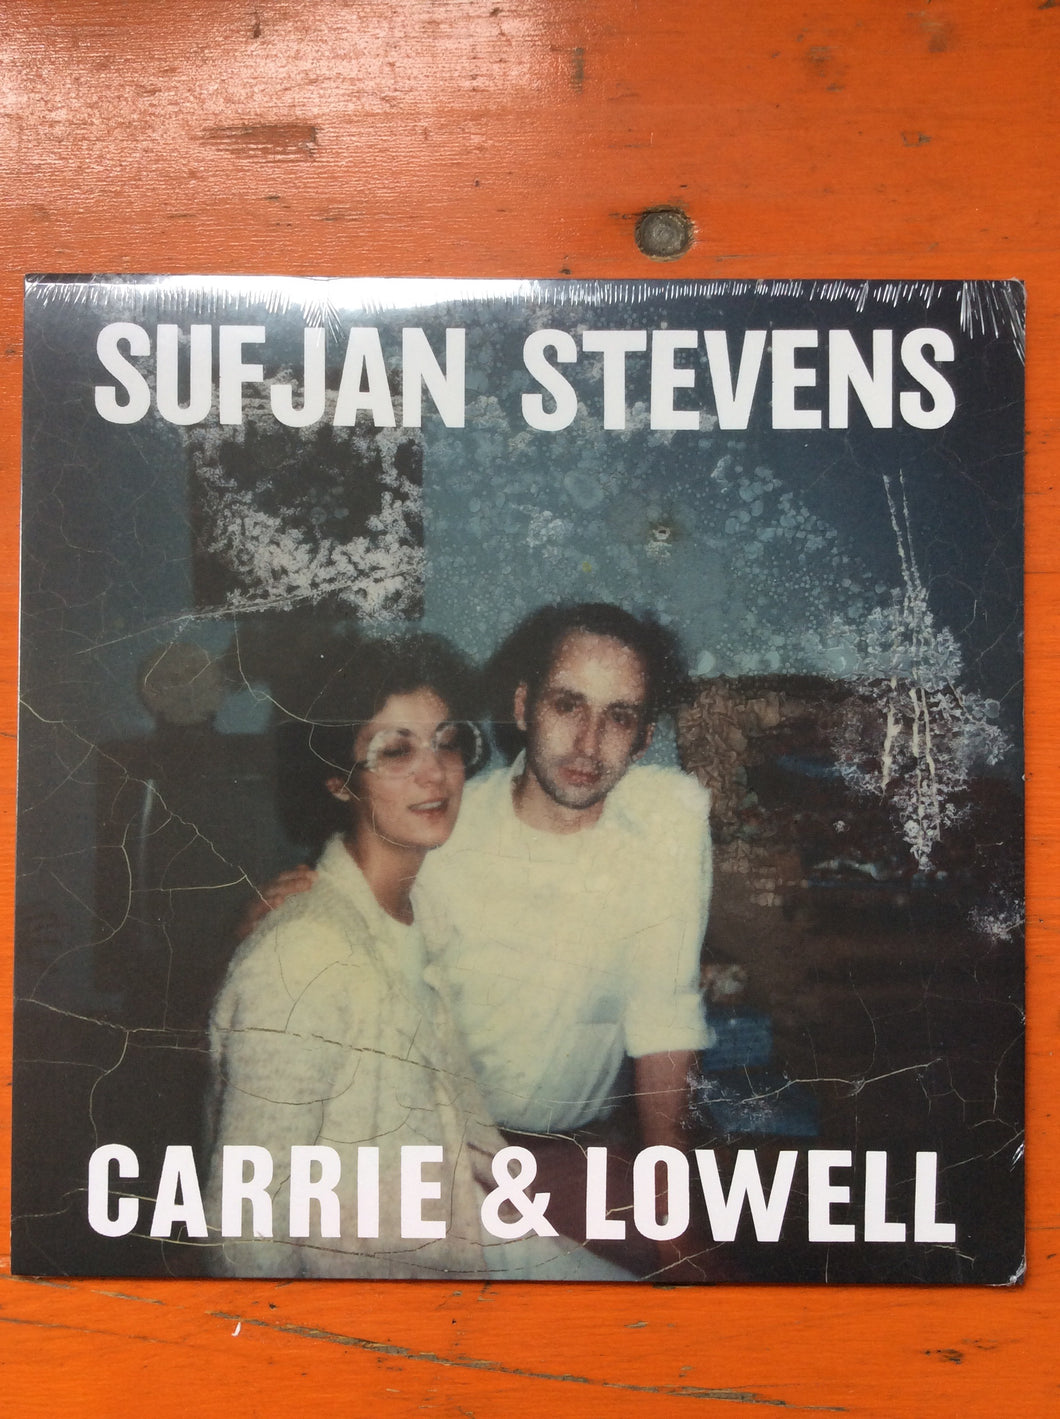 Sufjan Stevens - Carrie & Lowell